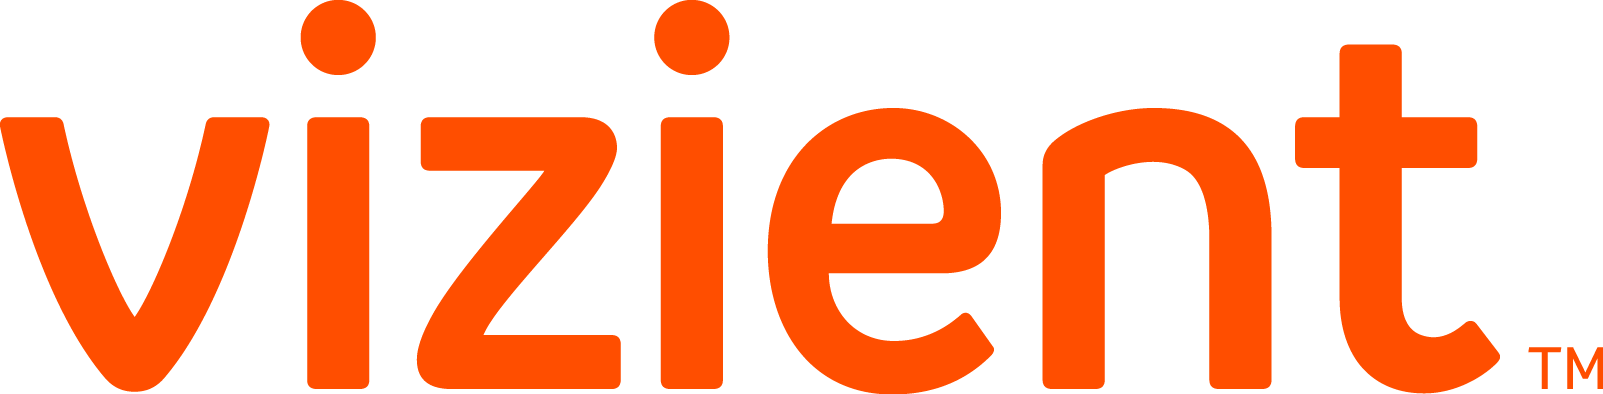 Vizient Logo - Vizient Inc Logo (1603x394)